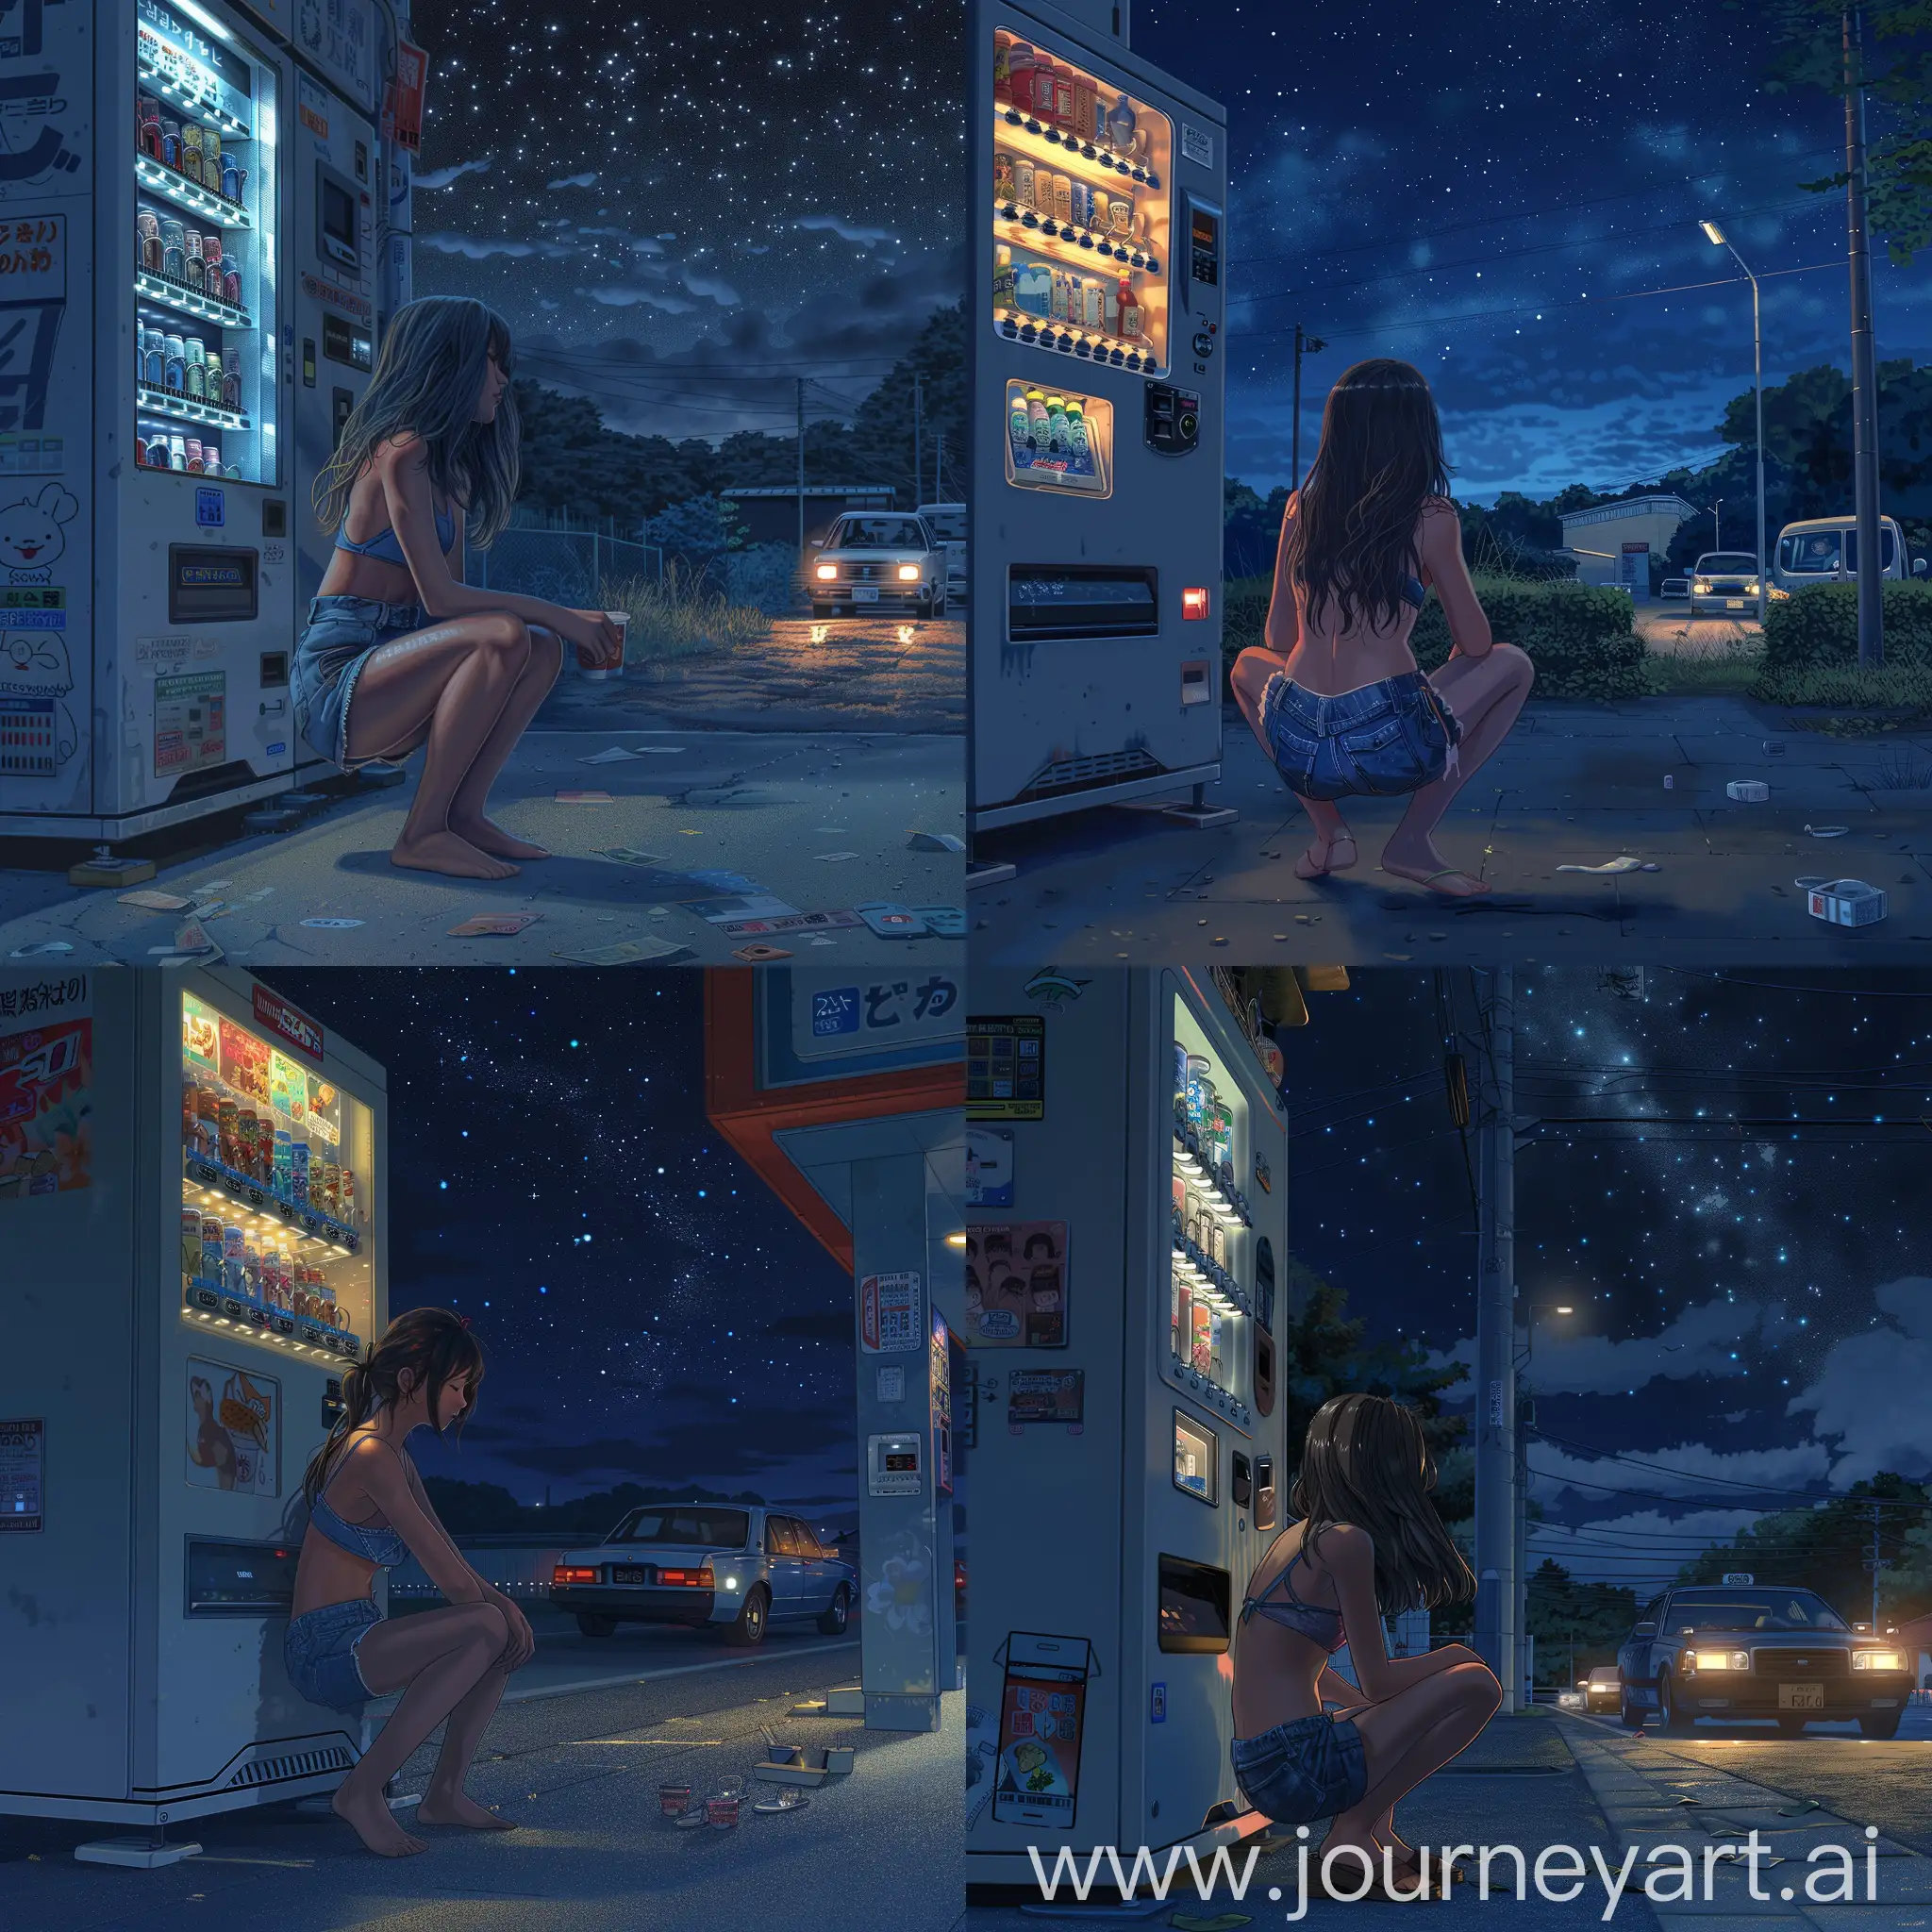 детализированная иллюстрация, cgi, компьютерная графика, 2d, ночное токио, девушка сидит перед торговым автоматом на корточках одетая в джинсовые шорты, вдалеке едет машина с включенными фарами, ночь, звездное небо